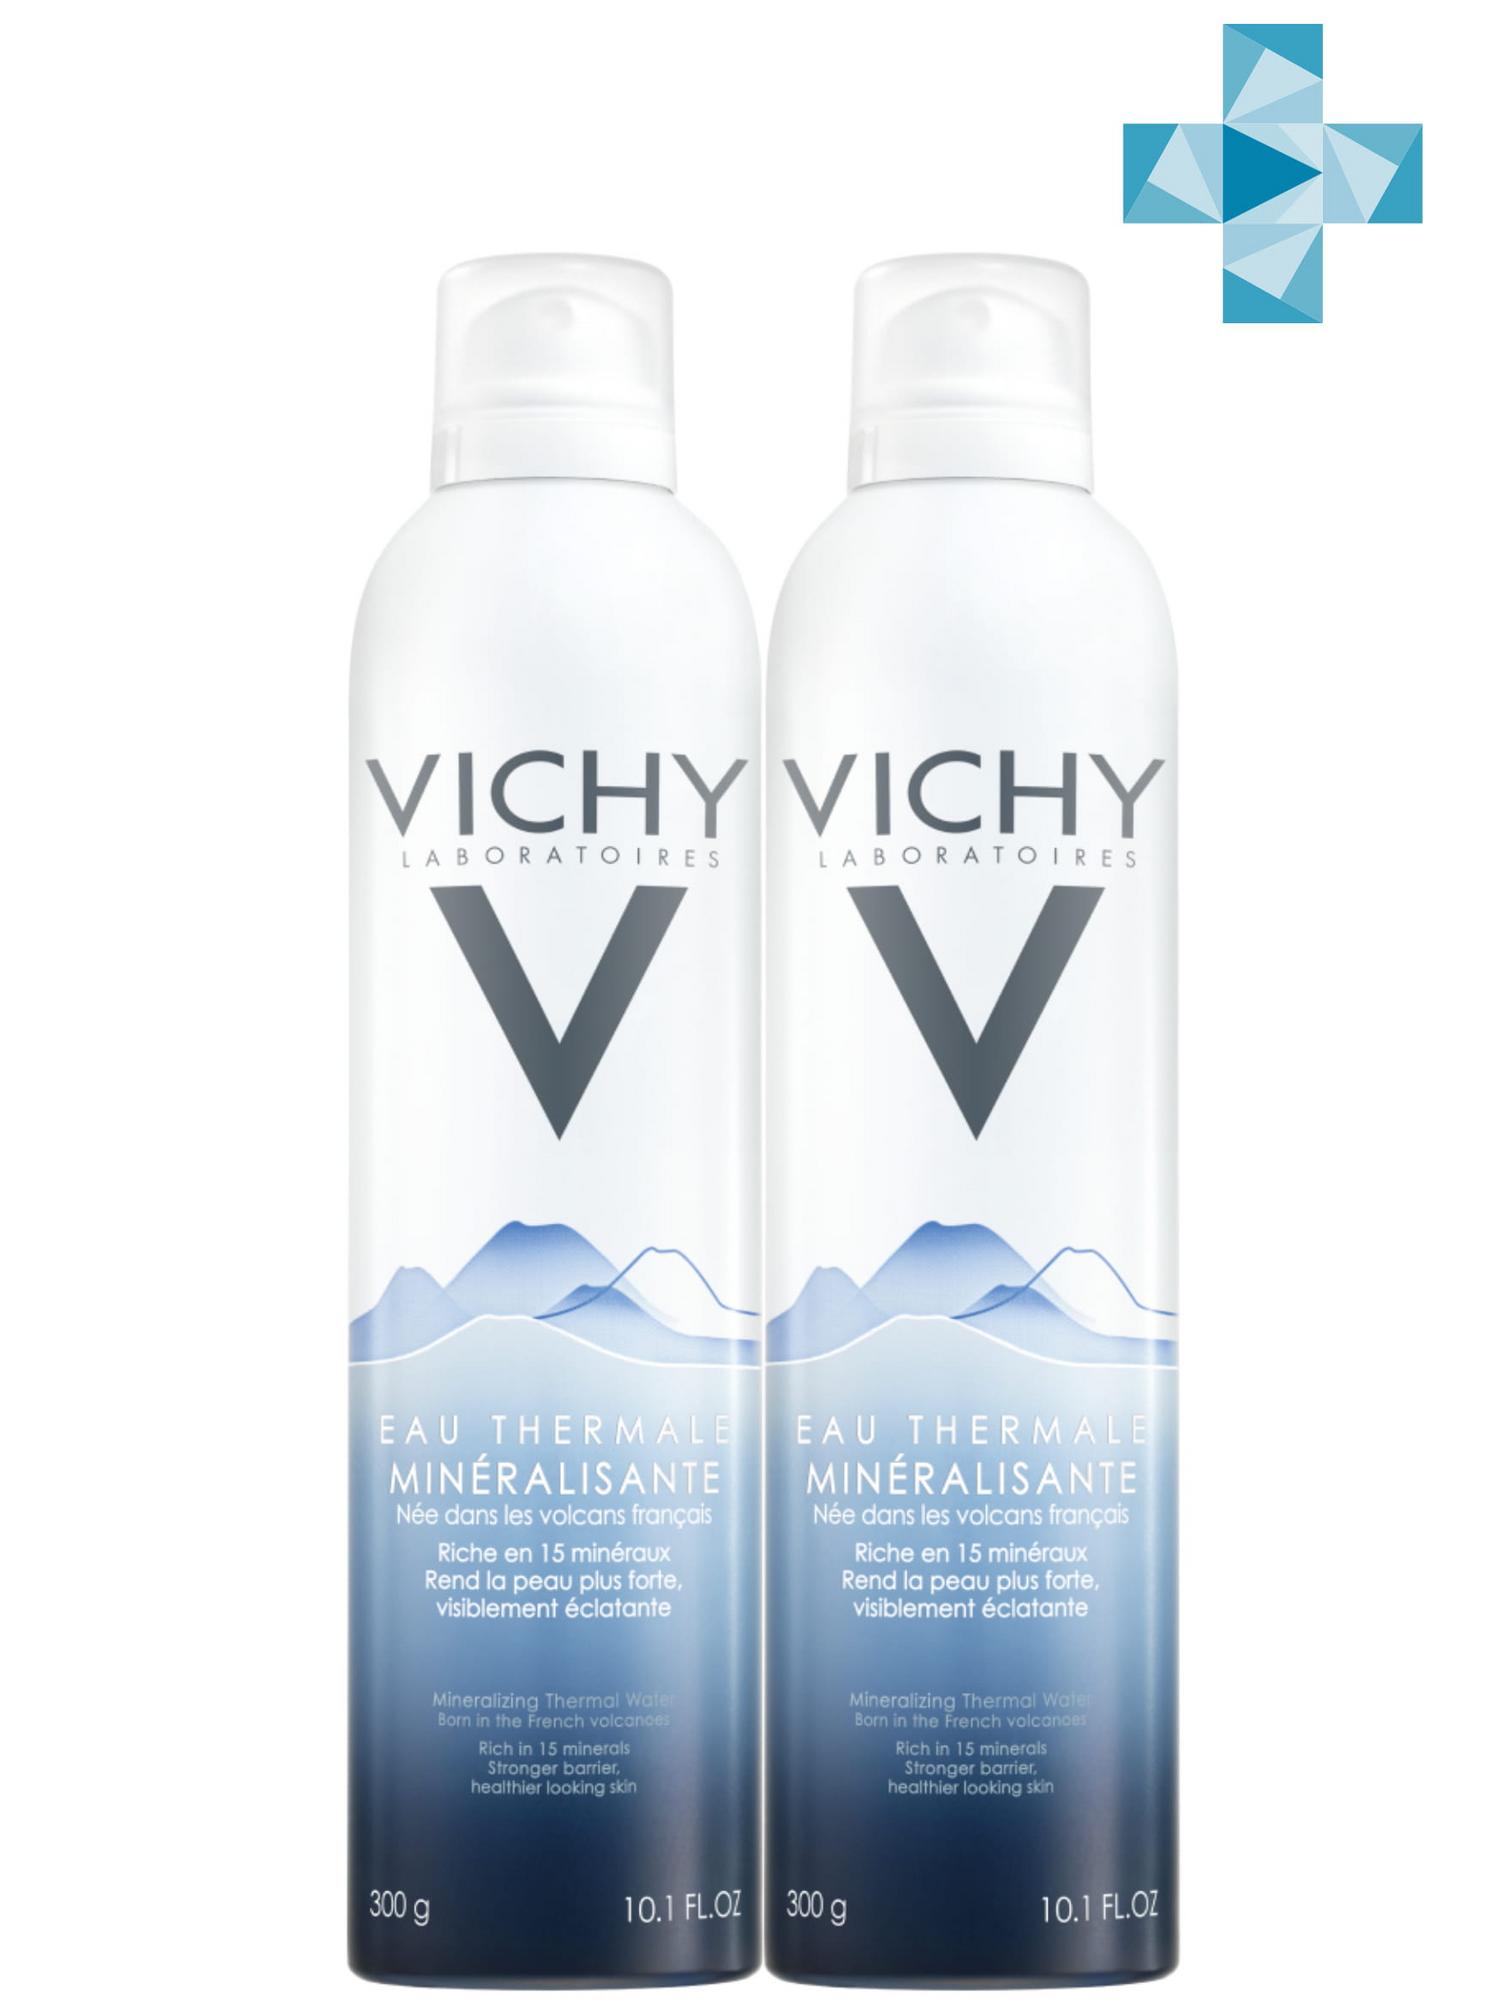 цена Vichy Комплект Вулканическая термальная вода, 2 х 300 мл (Vichy, Thermal Water Vichy)